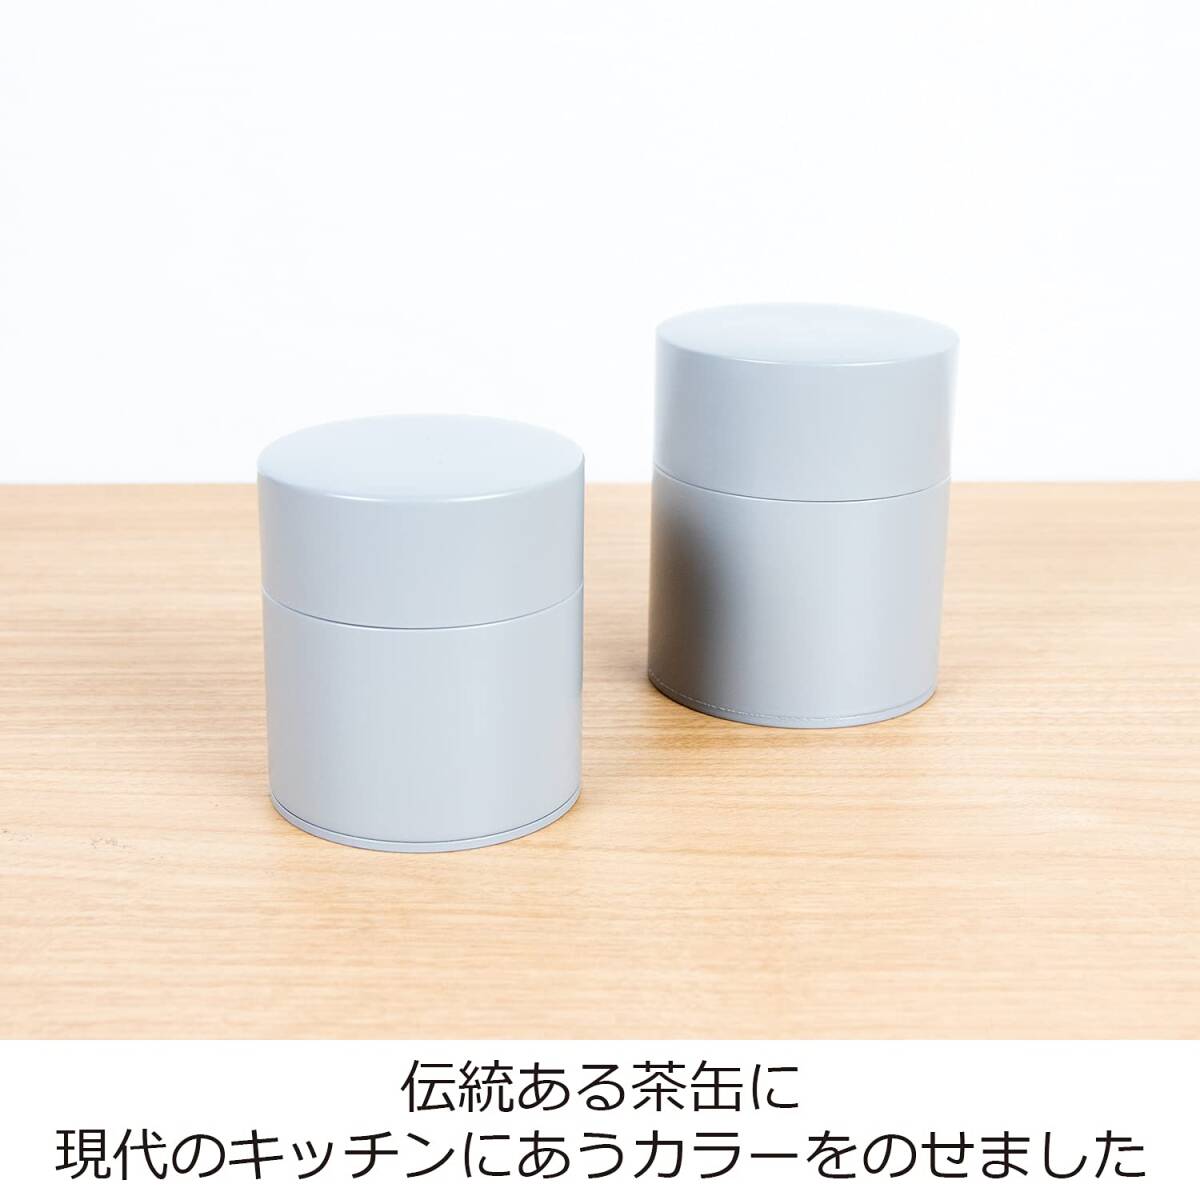 にちにち道具 茶筒 塗り缶 平型 200g スチール 日本製 グレー_画像2